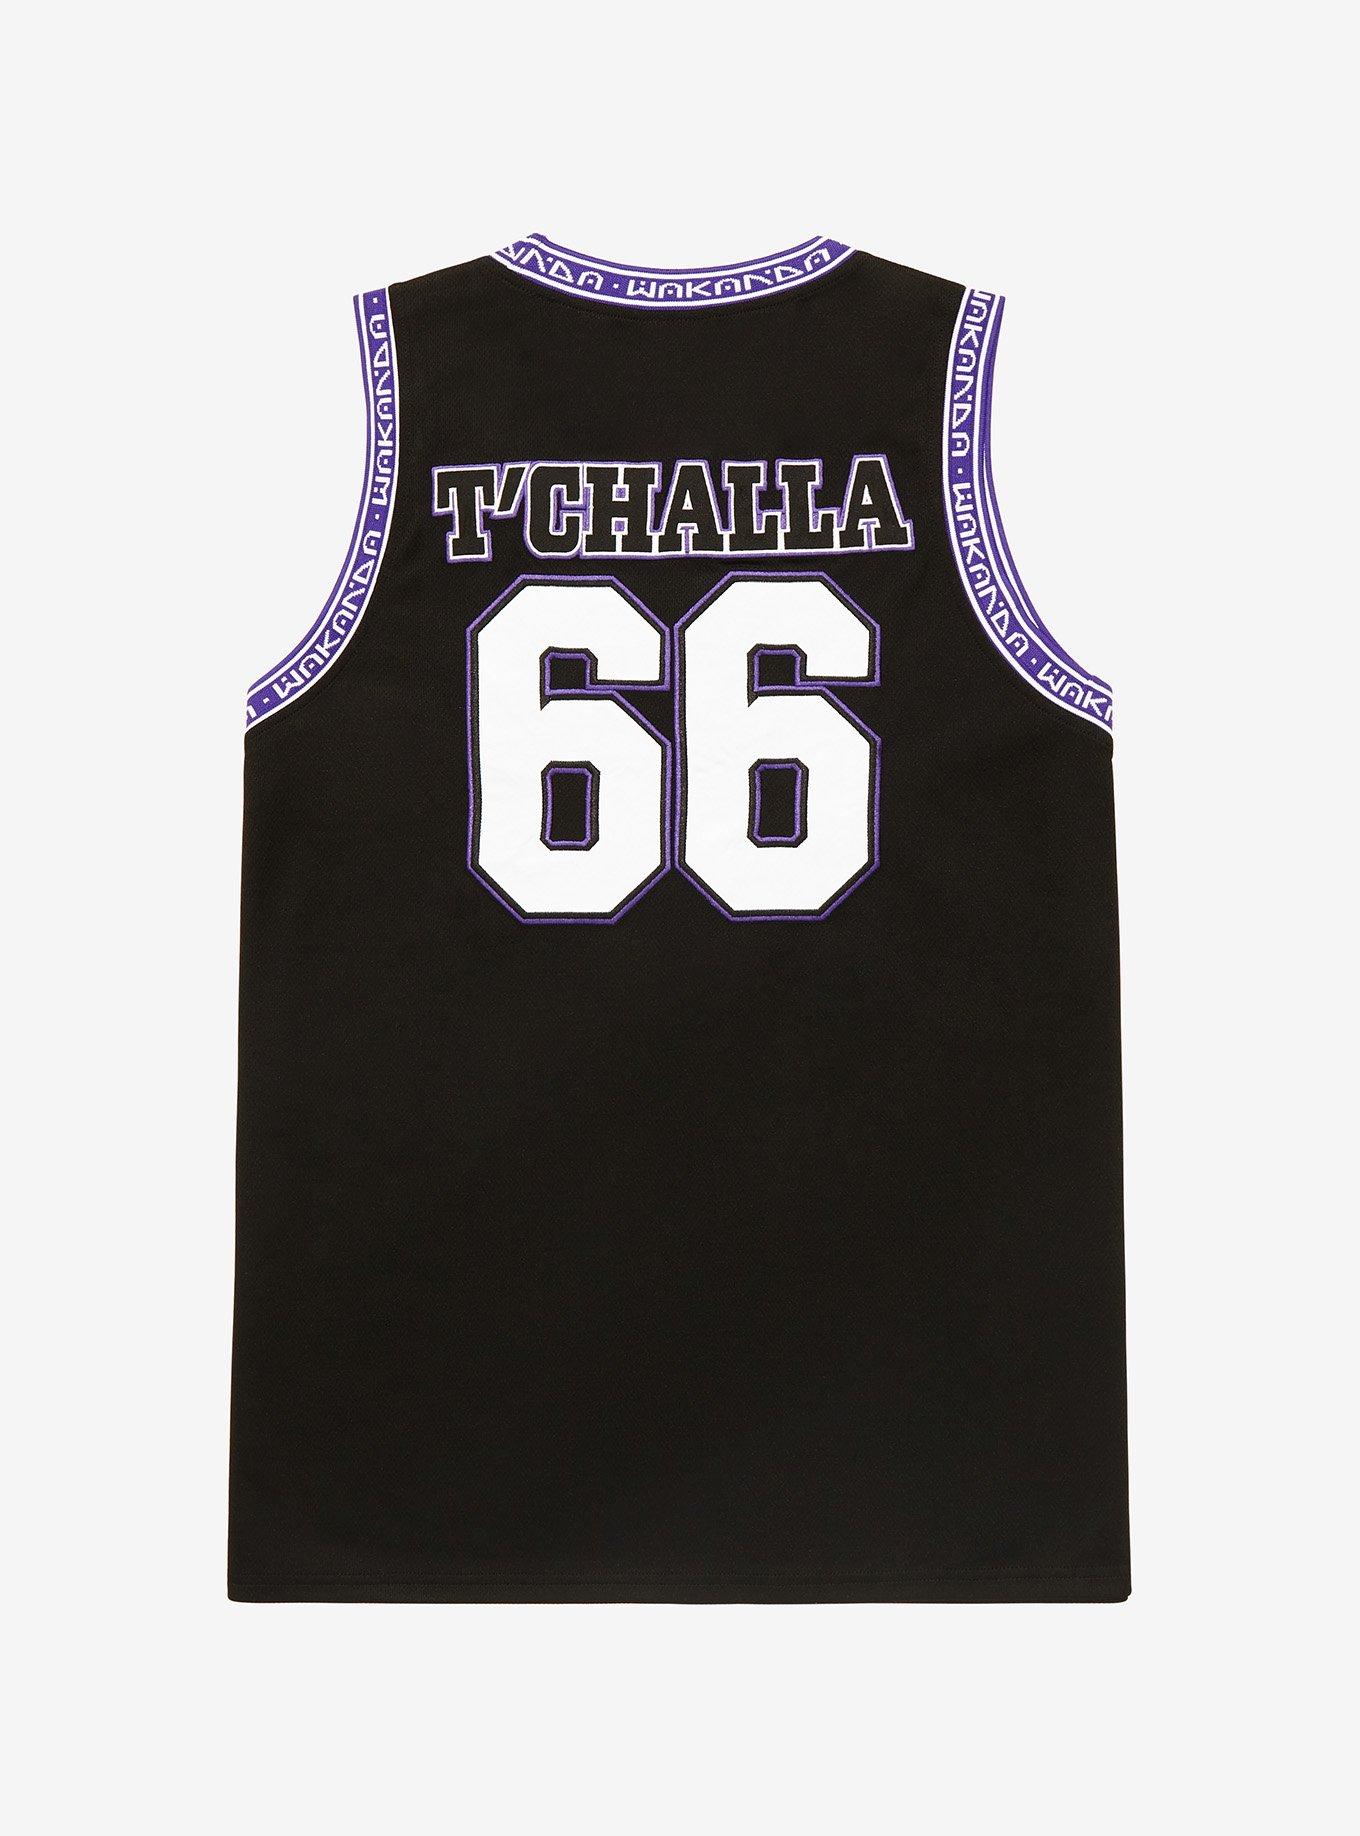 Black Panther Basketball Jersey Wakanda T'Challa Shirt Size Large